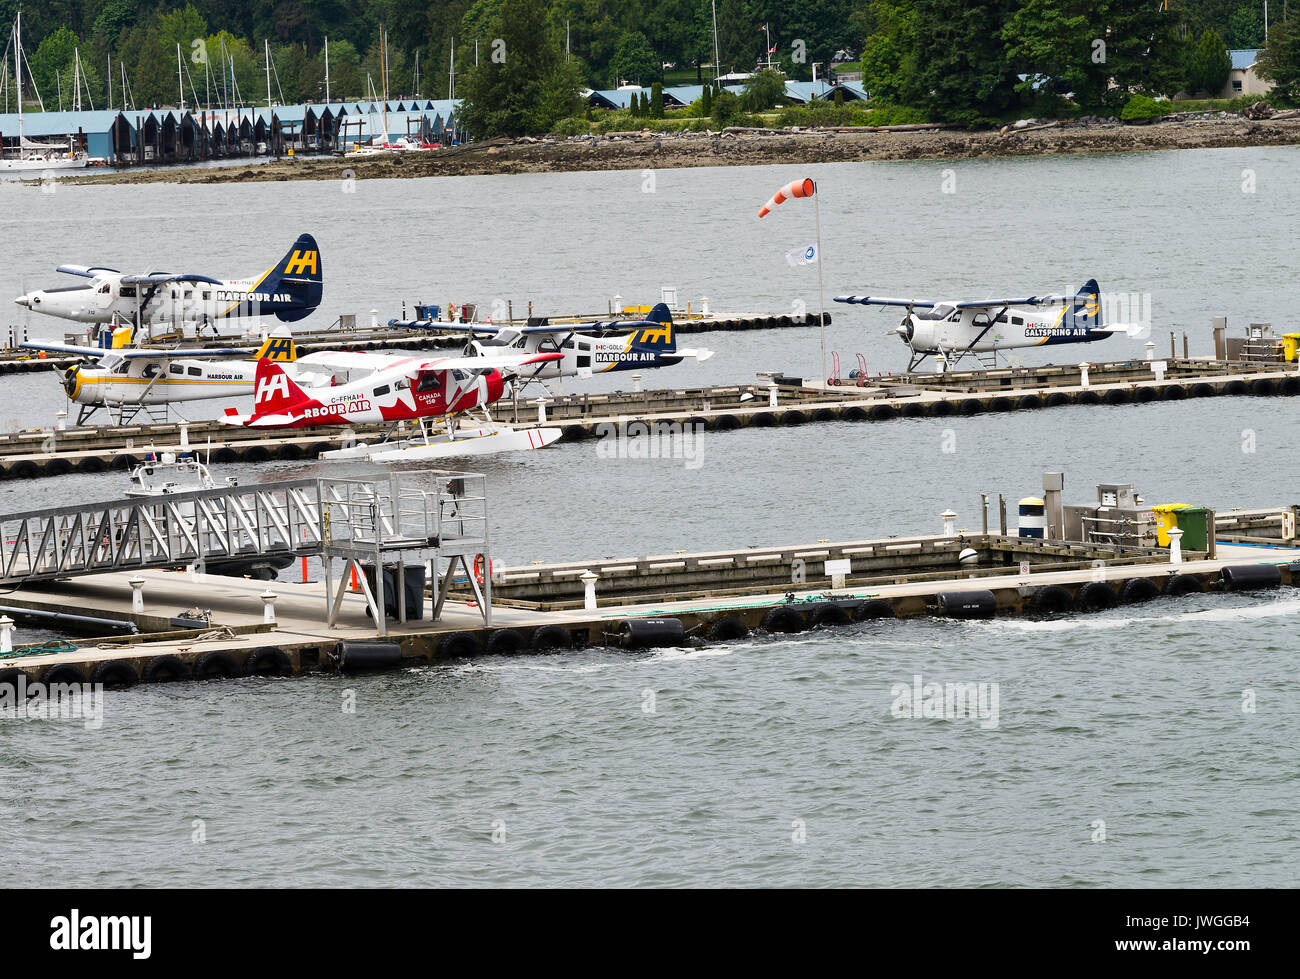 Harbour Air wasserflugzeuge an der Anlegestelle Plattformen auf Wasser in Vancouver British Columbia Kanada angedockt Stockfoto